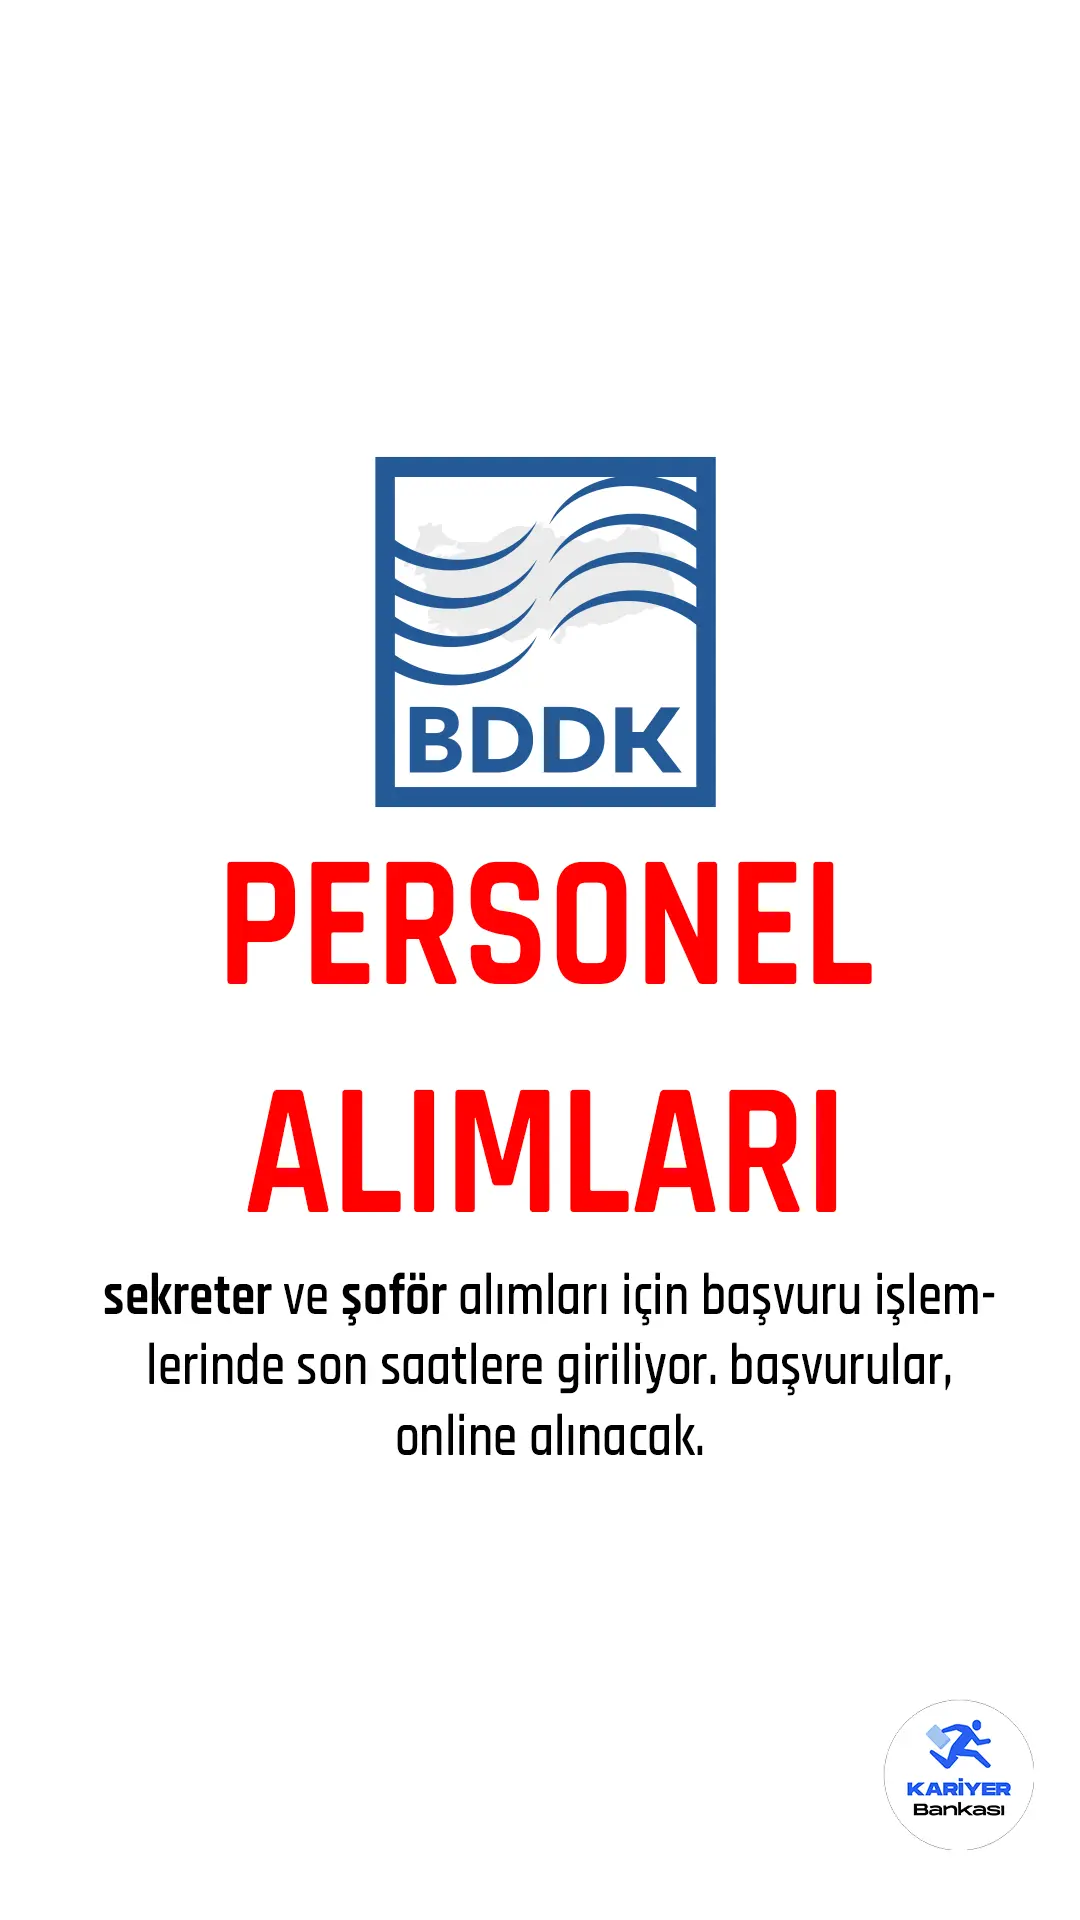 BDDK açıktan personel alımı başvuru işlemleri devam ediyor.